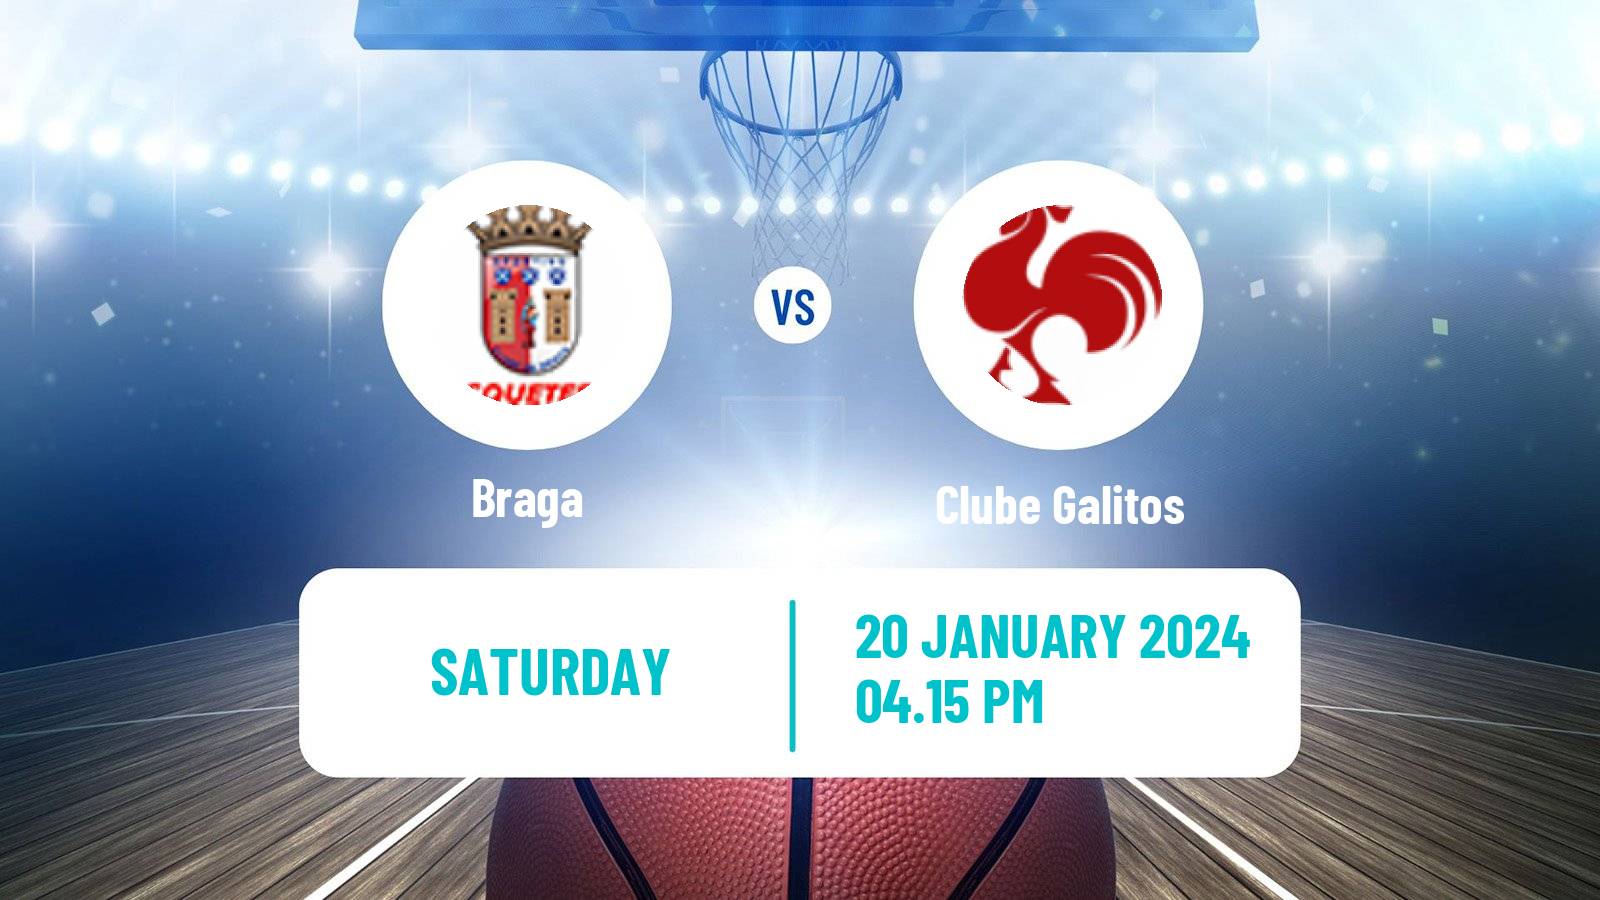 Basketball Portuguese Proliga Basketball Braga - Clube Galitos